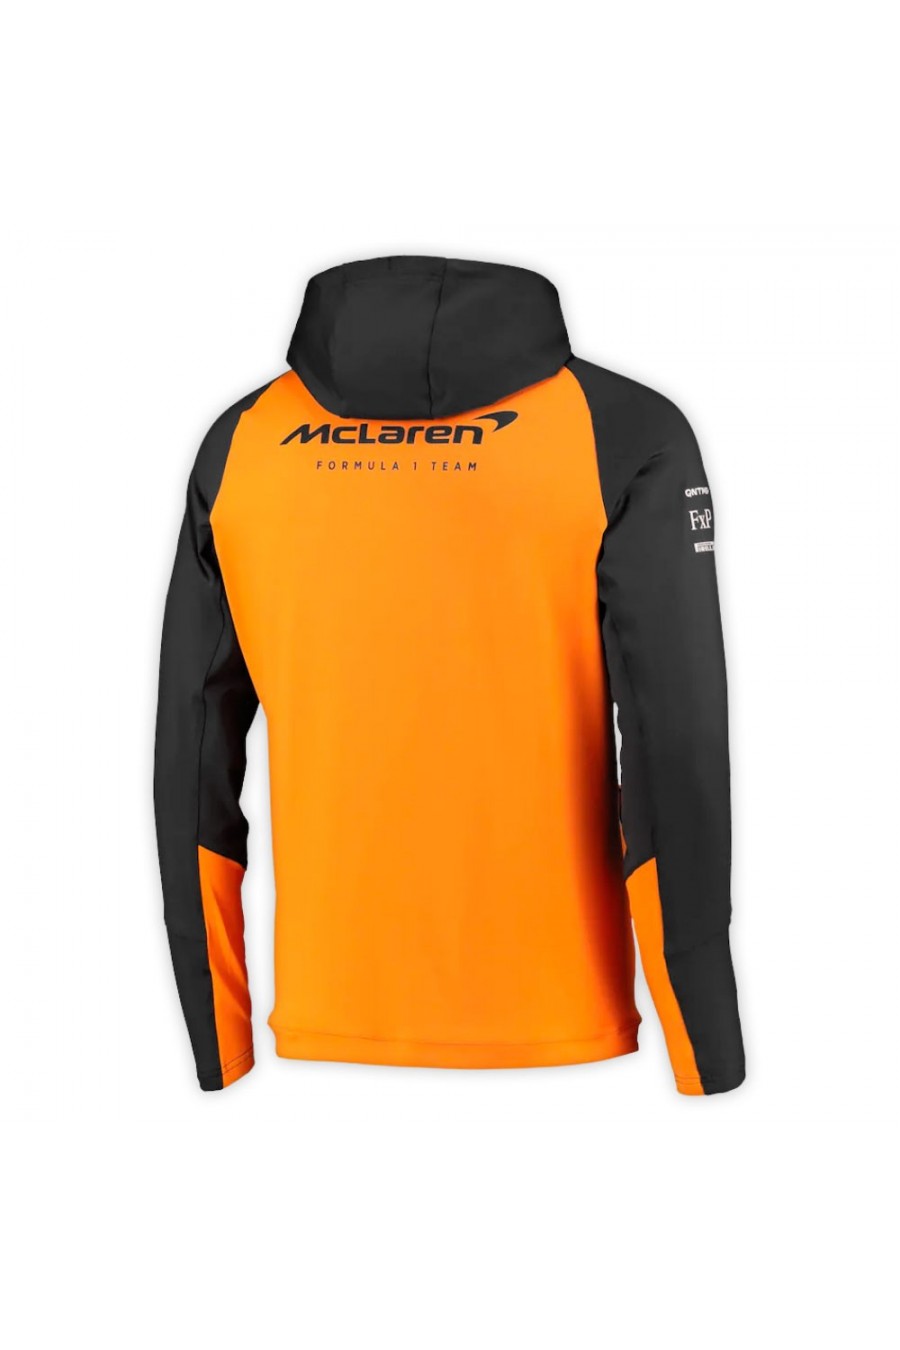 McLaren F1 2022 Sweatshirt